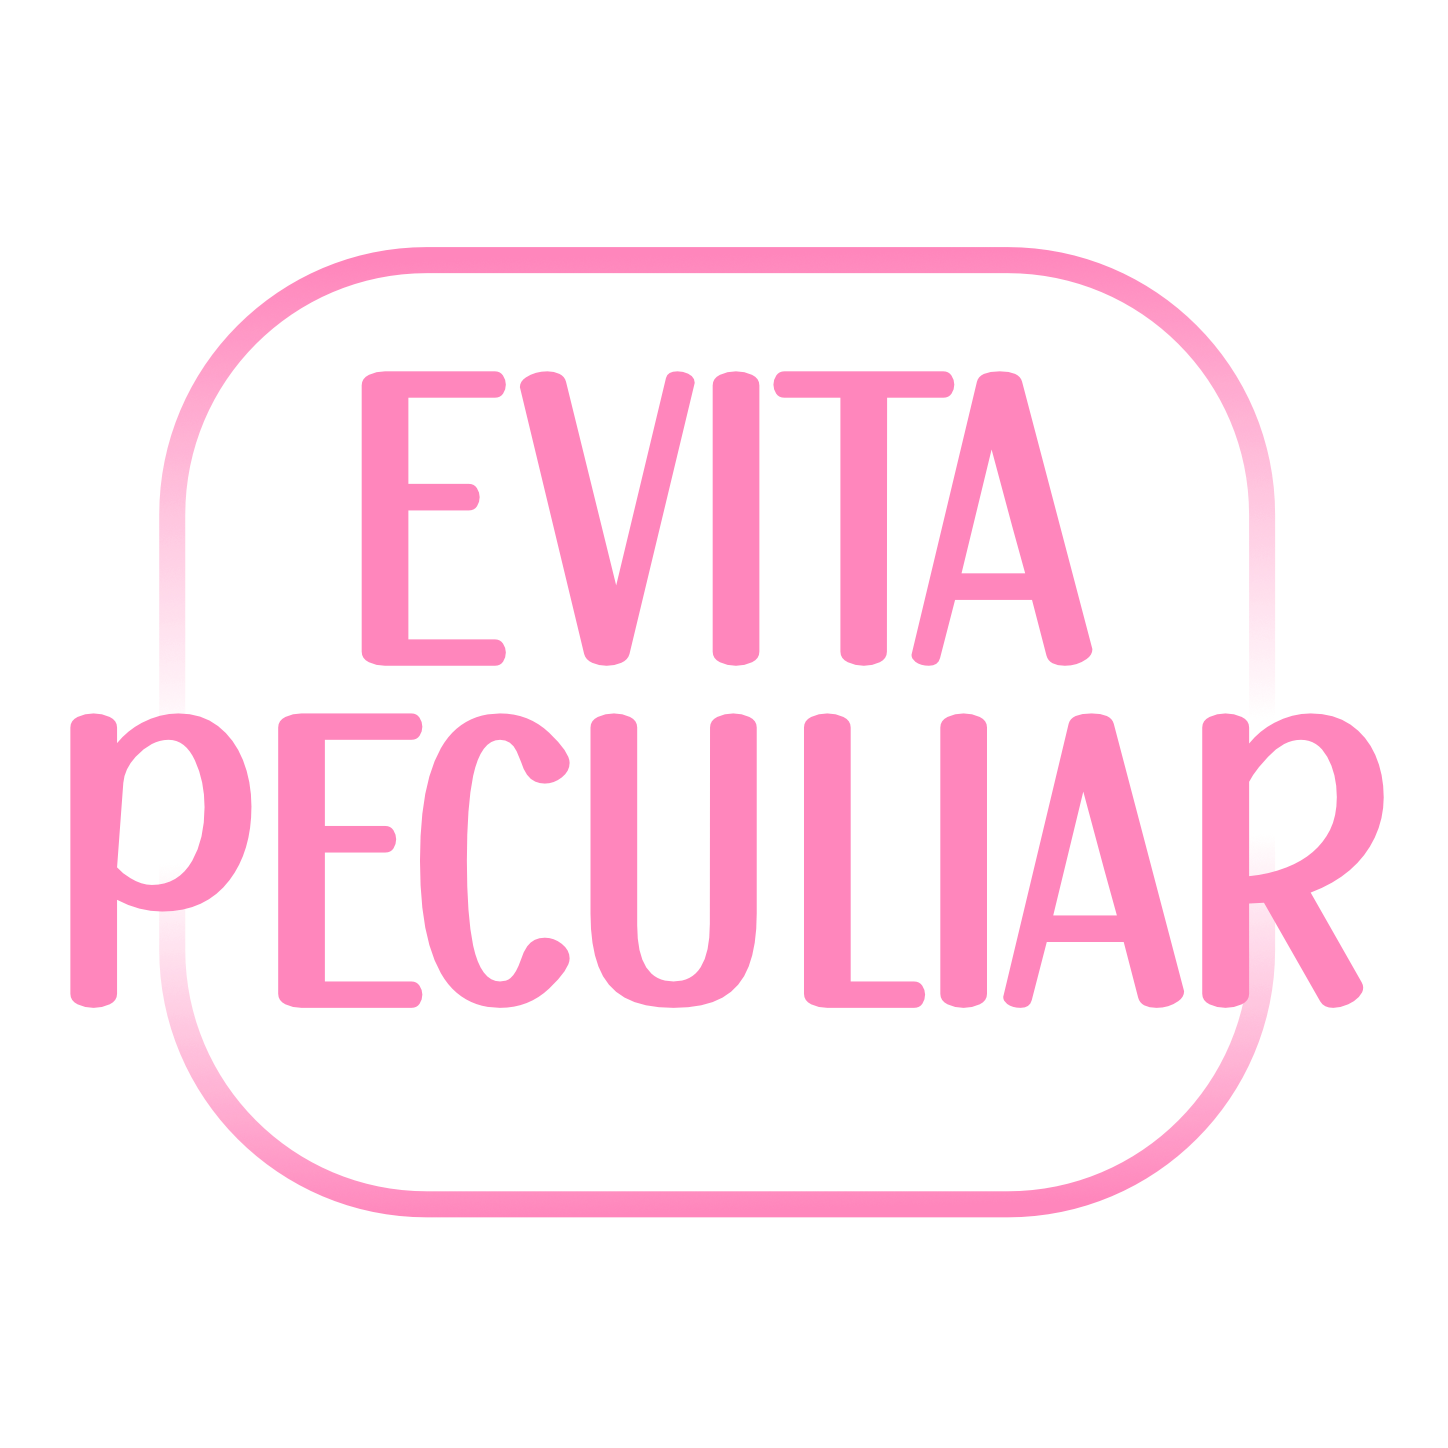 Evita Peculiar